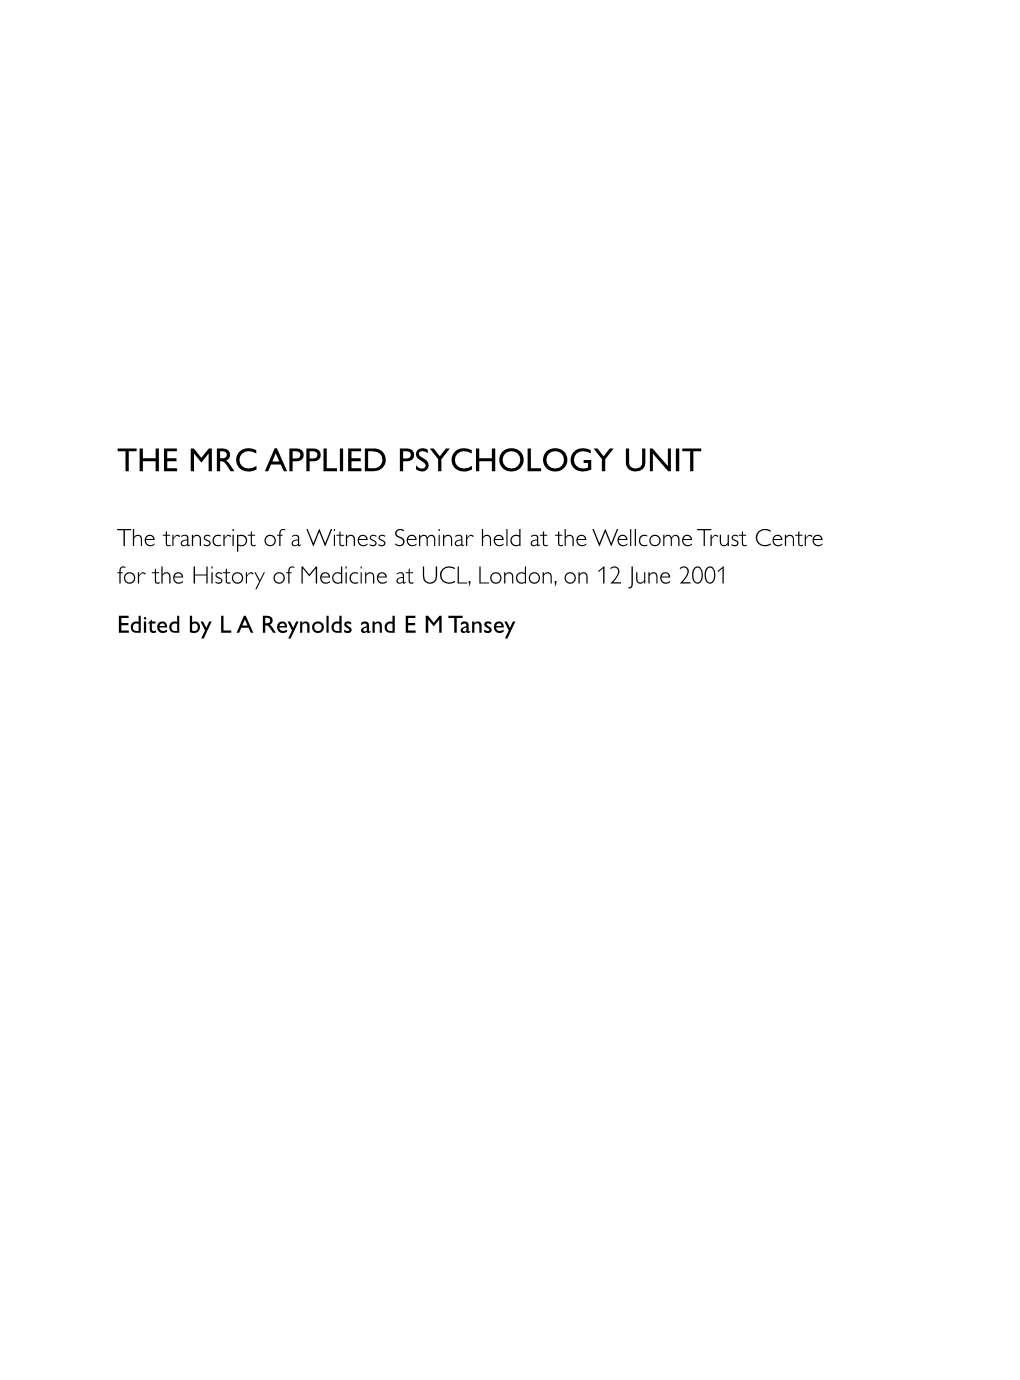 The Mrc Applied Psychology Unit